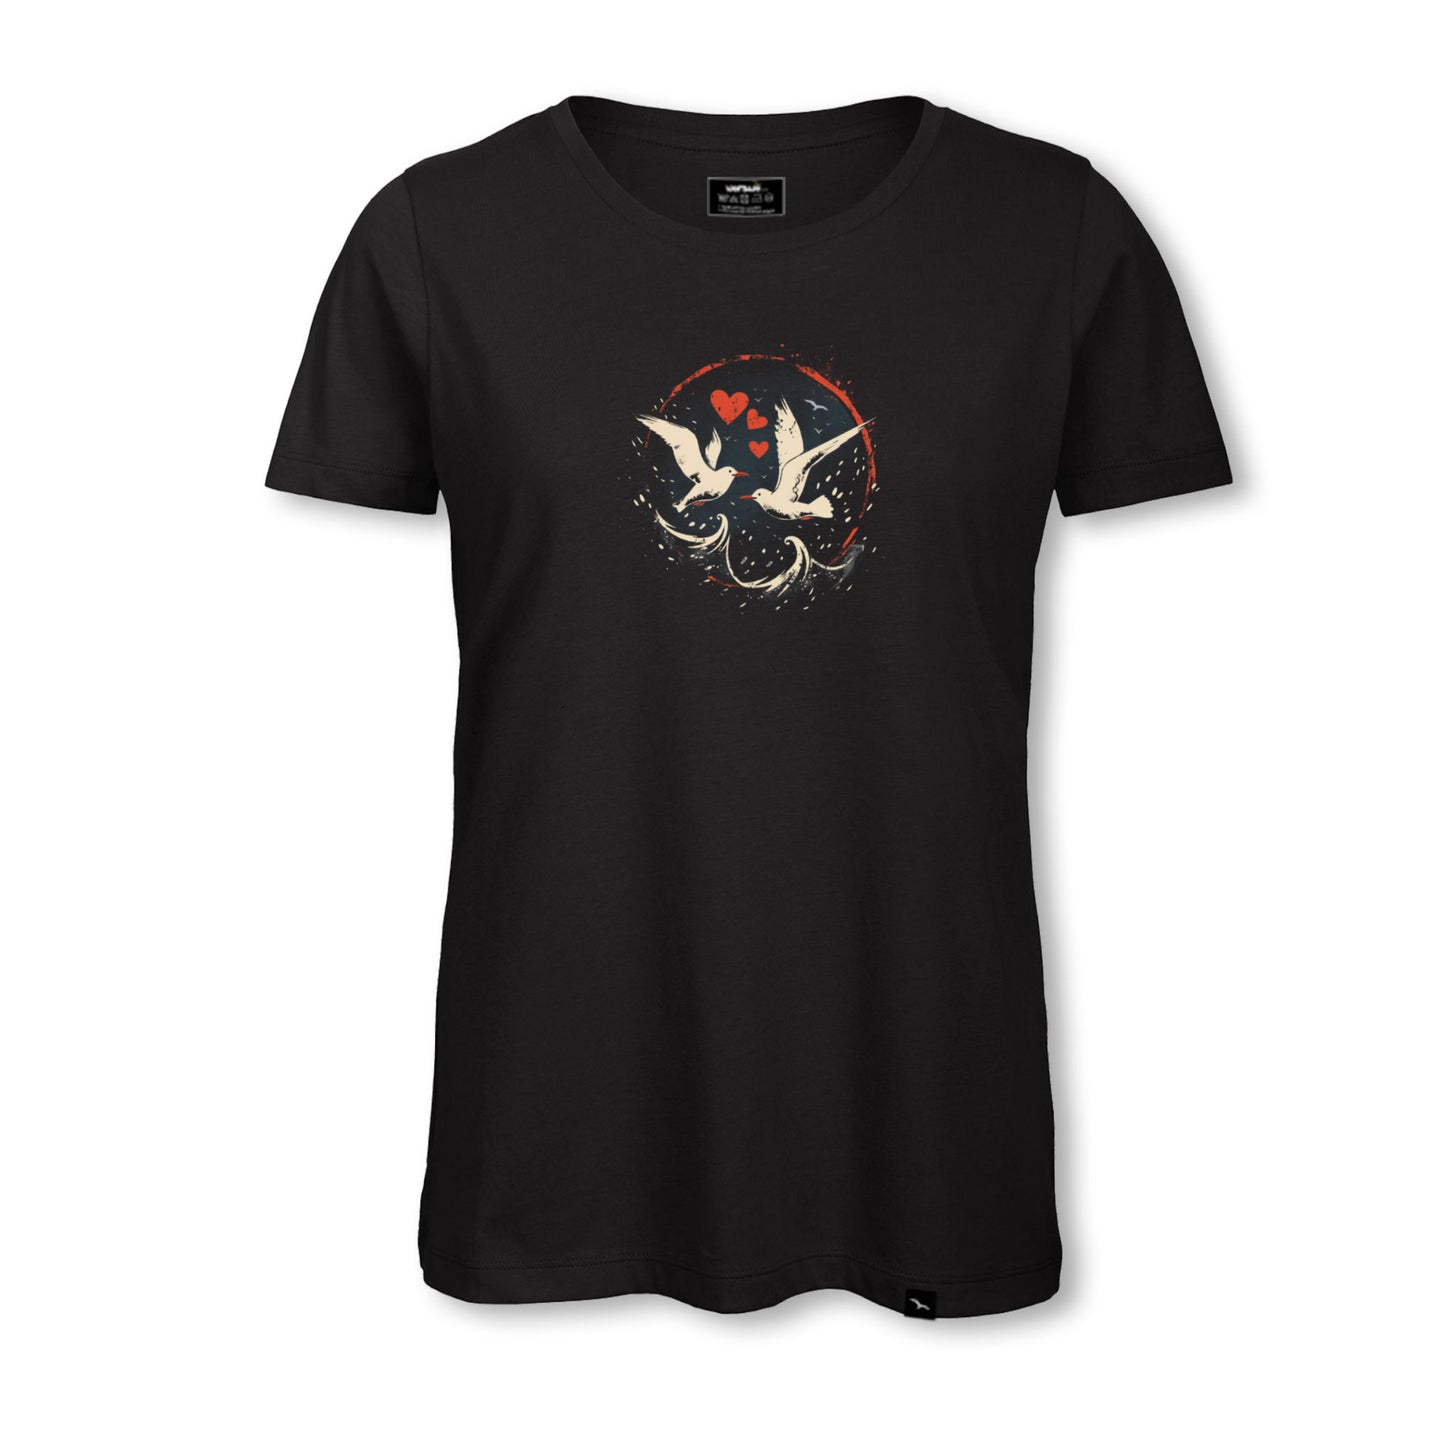 T-Shirt "Lovegulls"